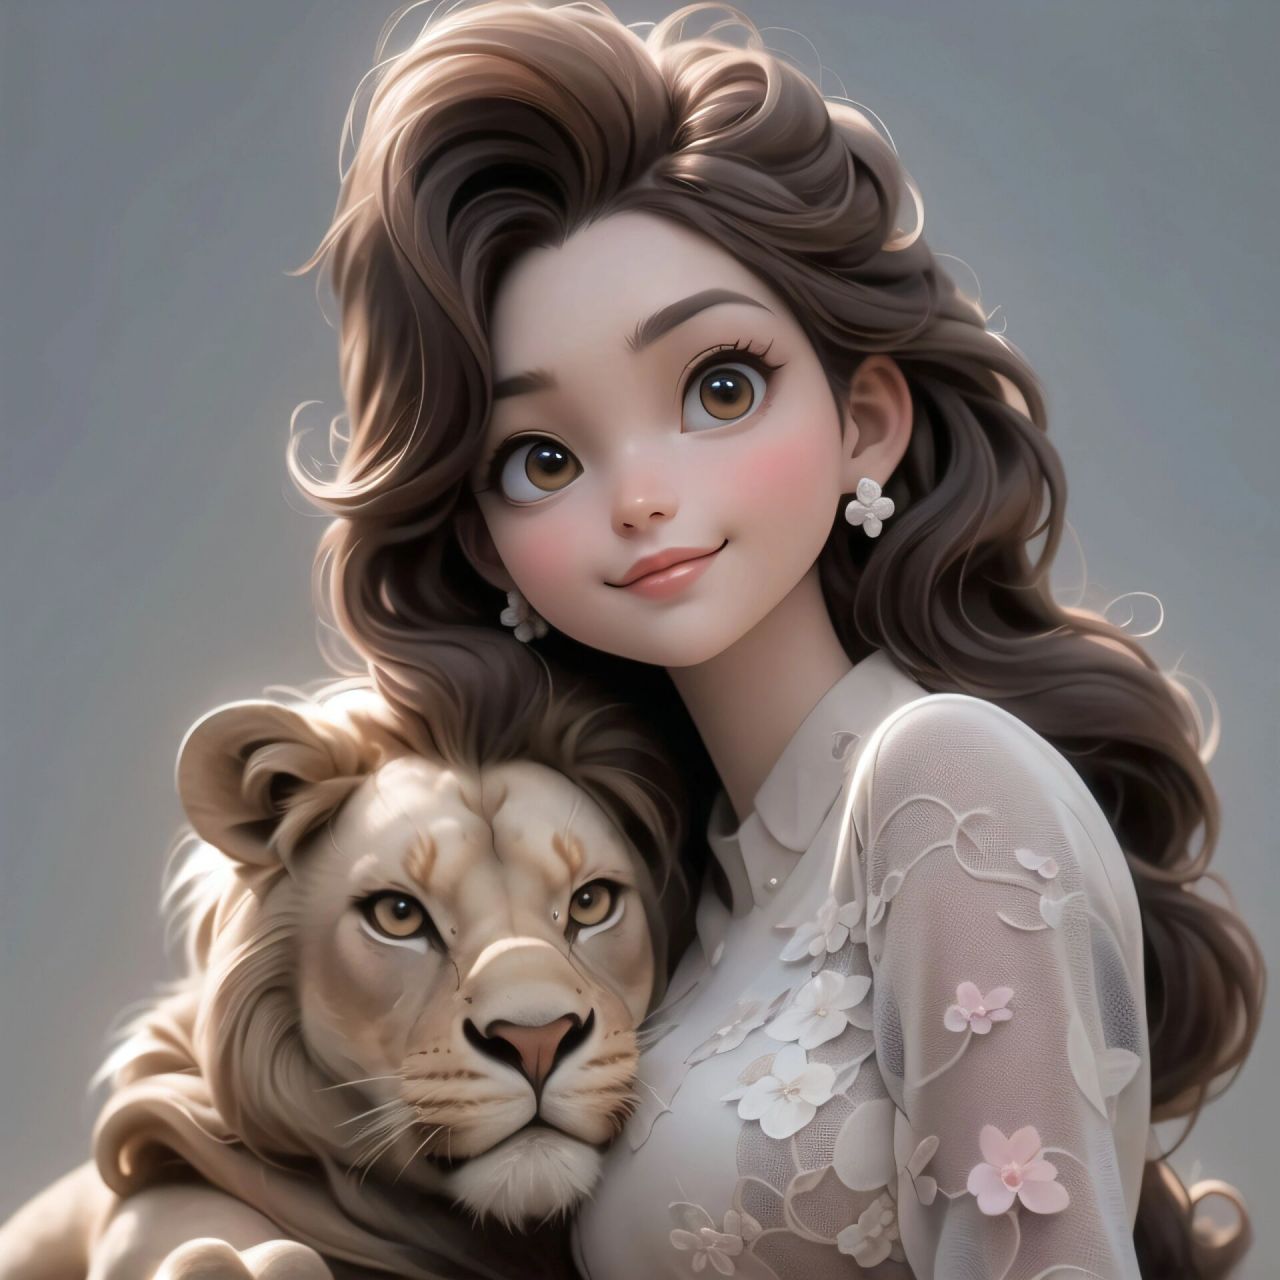 女生头像 十二星座系列之狮子座  狮子和它的迪士尼公主